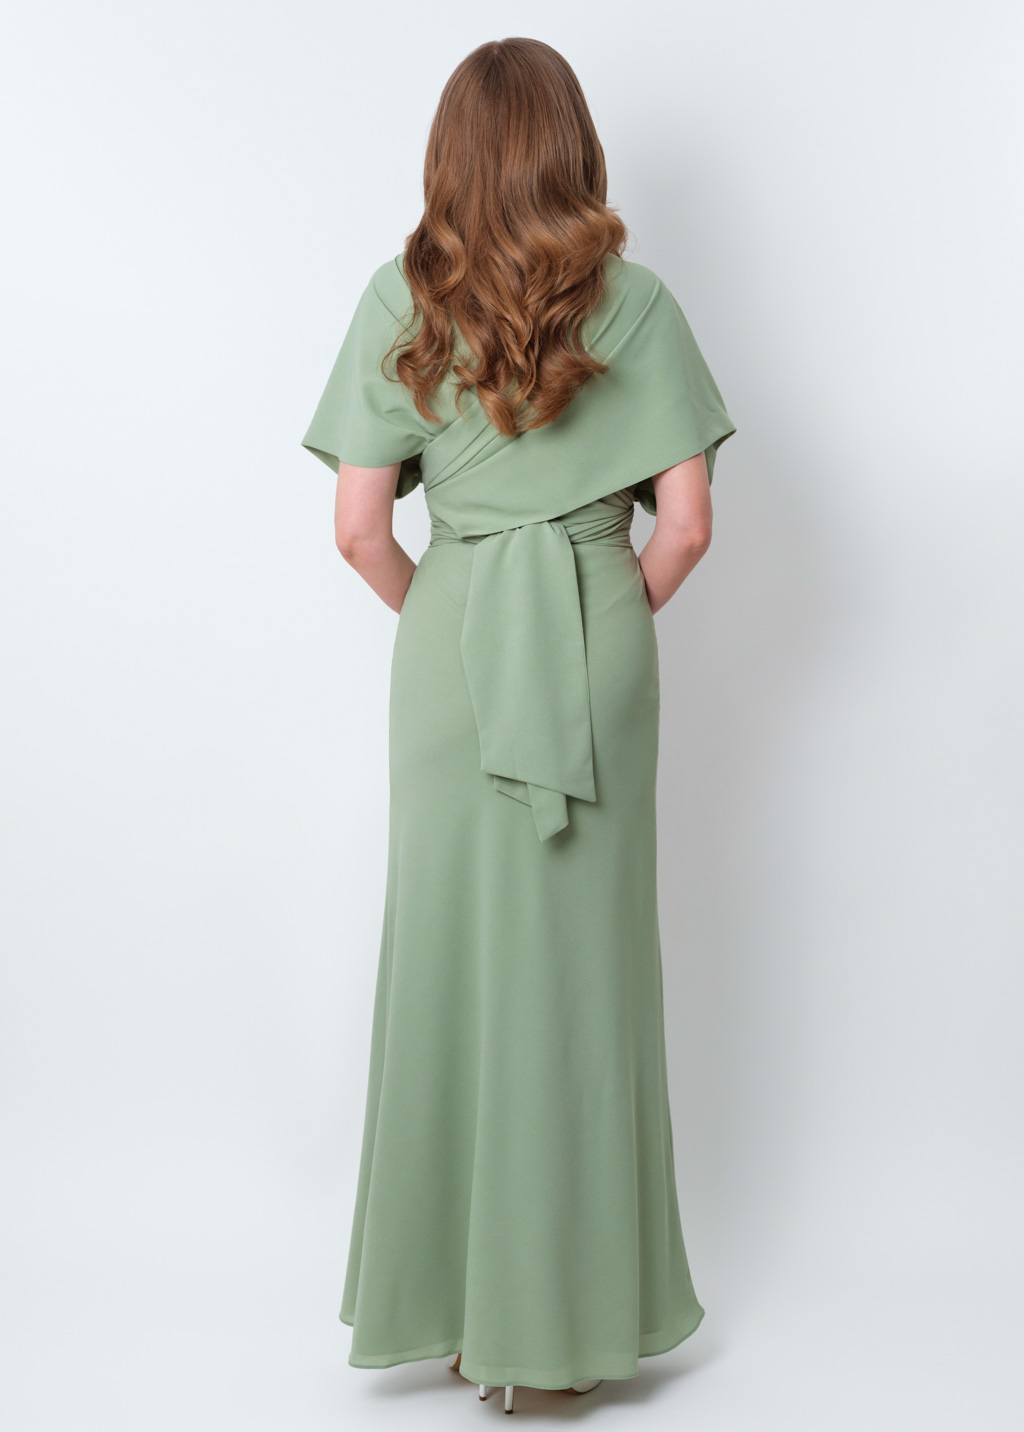 Sage green chiffon infinity dress